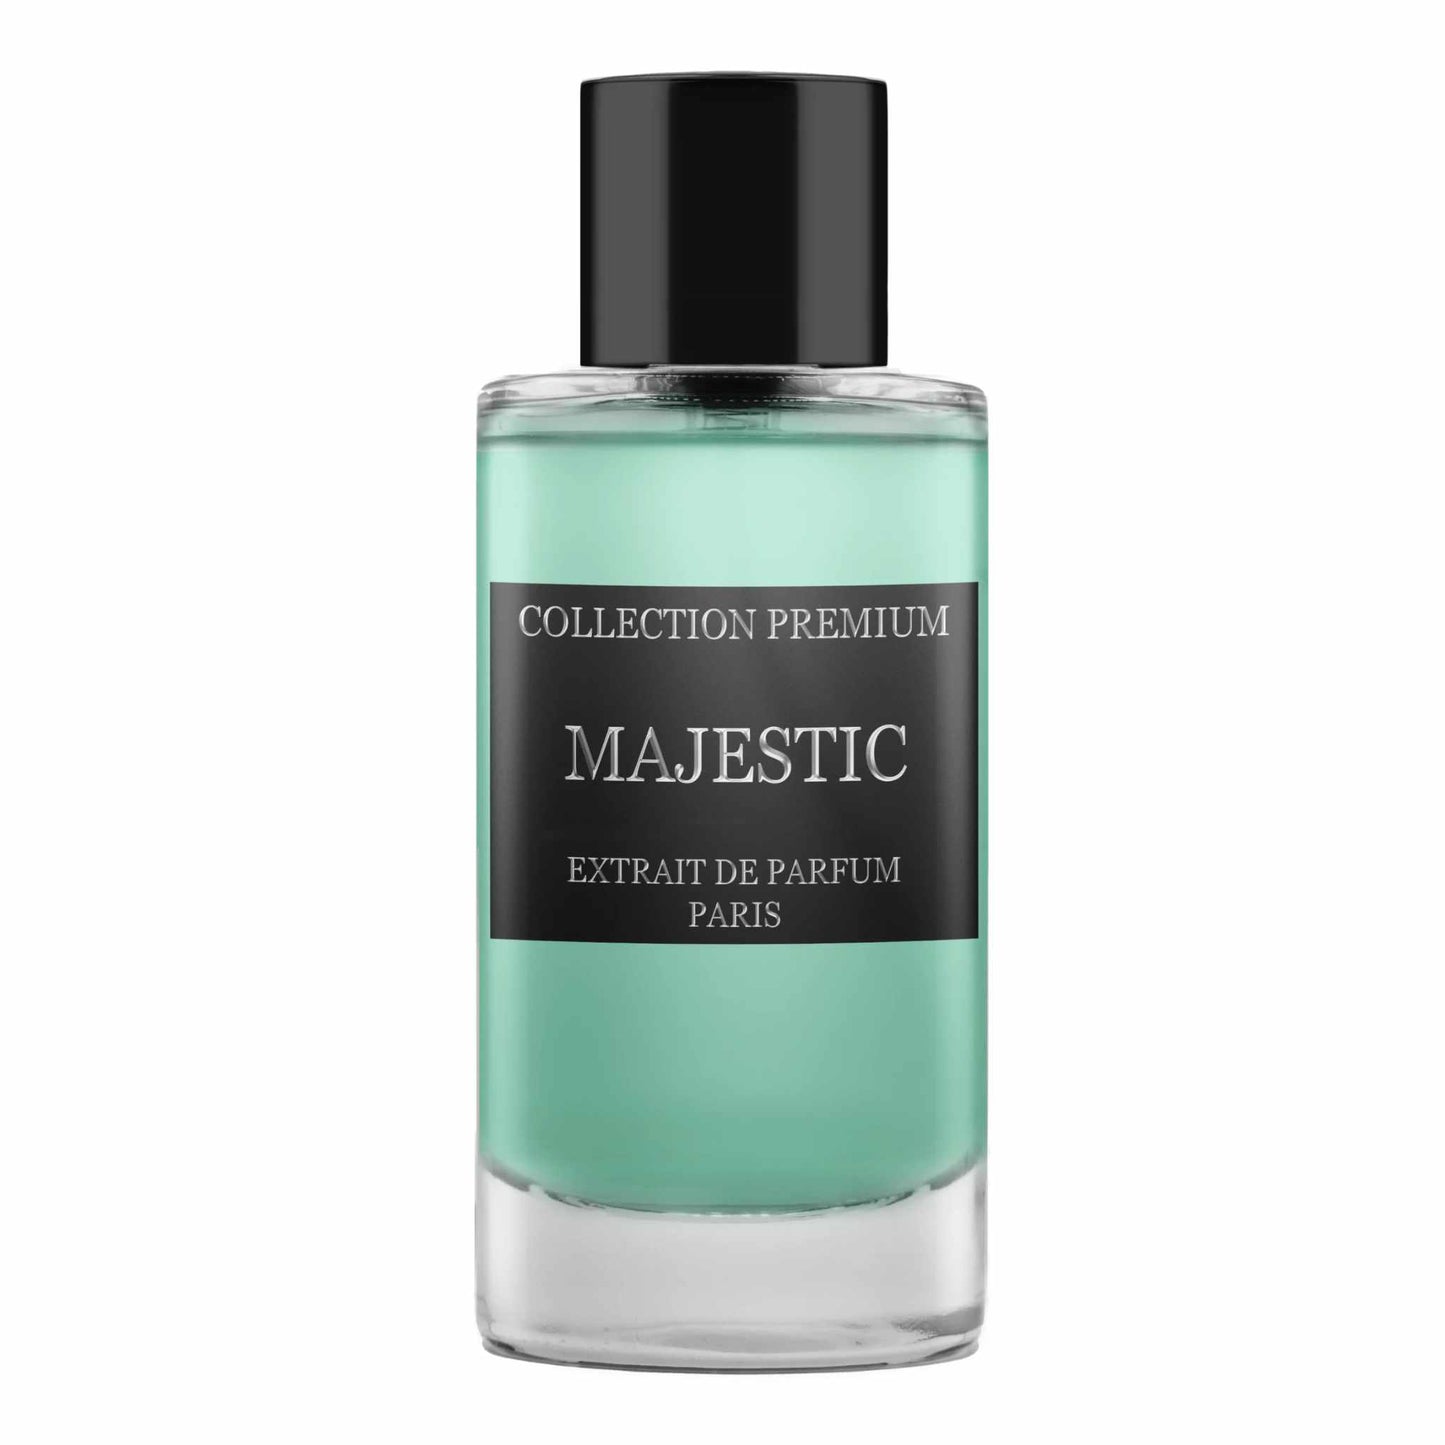 Collection Premium Majestic Extrait de Parfum 50 ml